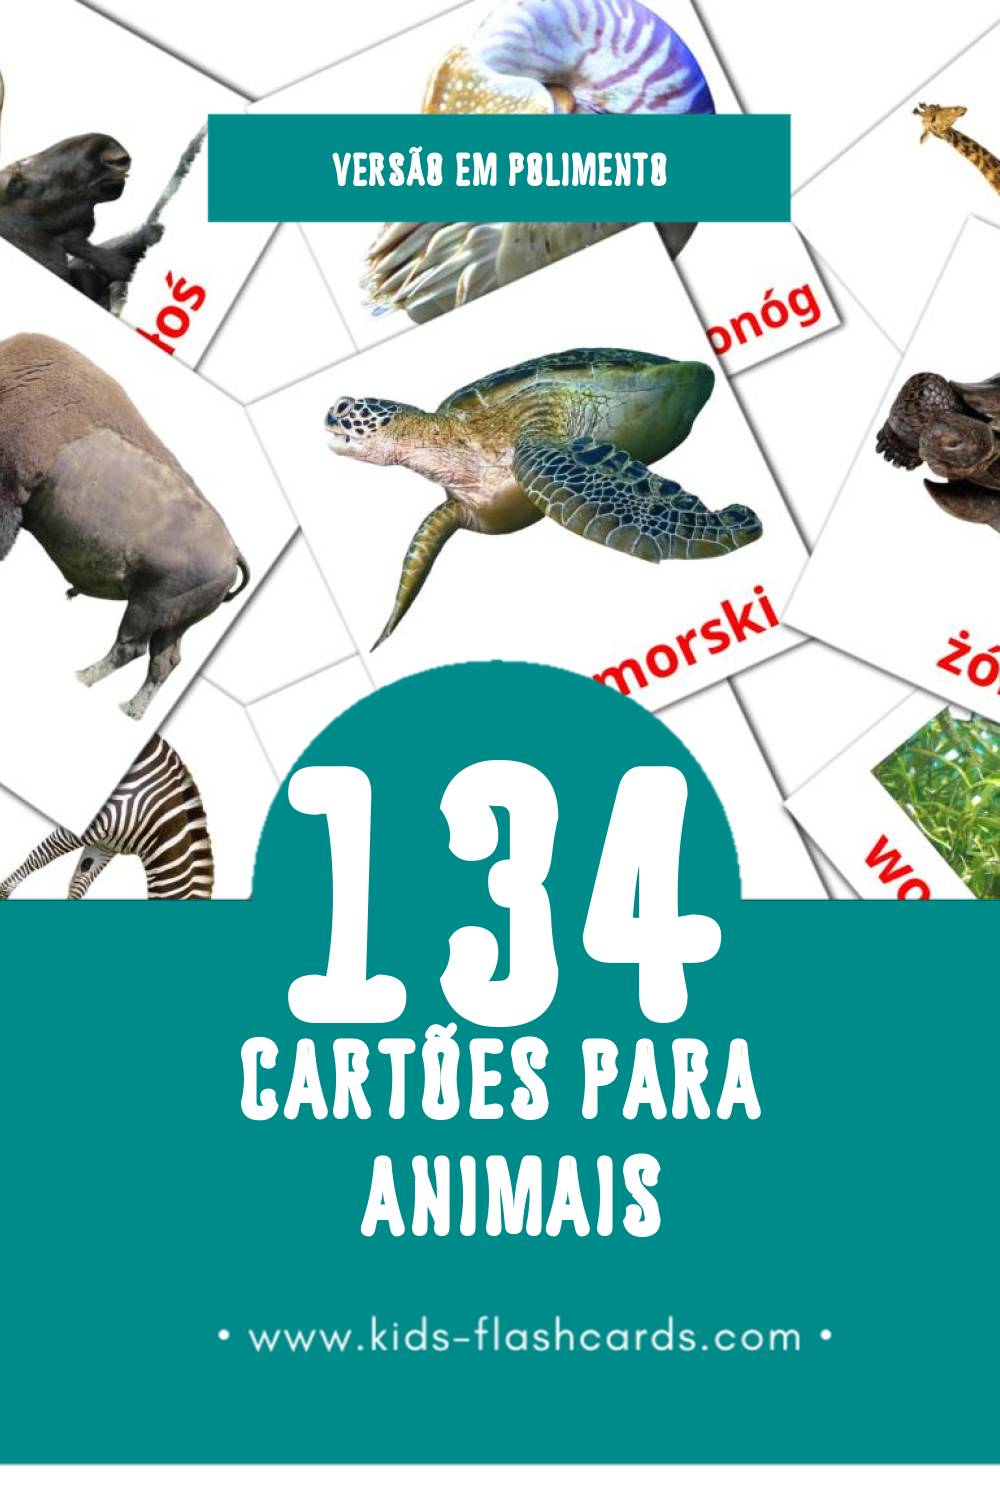 Flashcards de zwierzęta Visuais para Toddlers (134 cartões em Polimento)